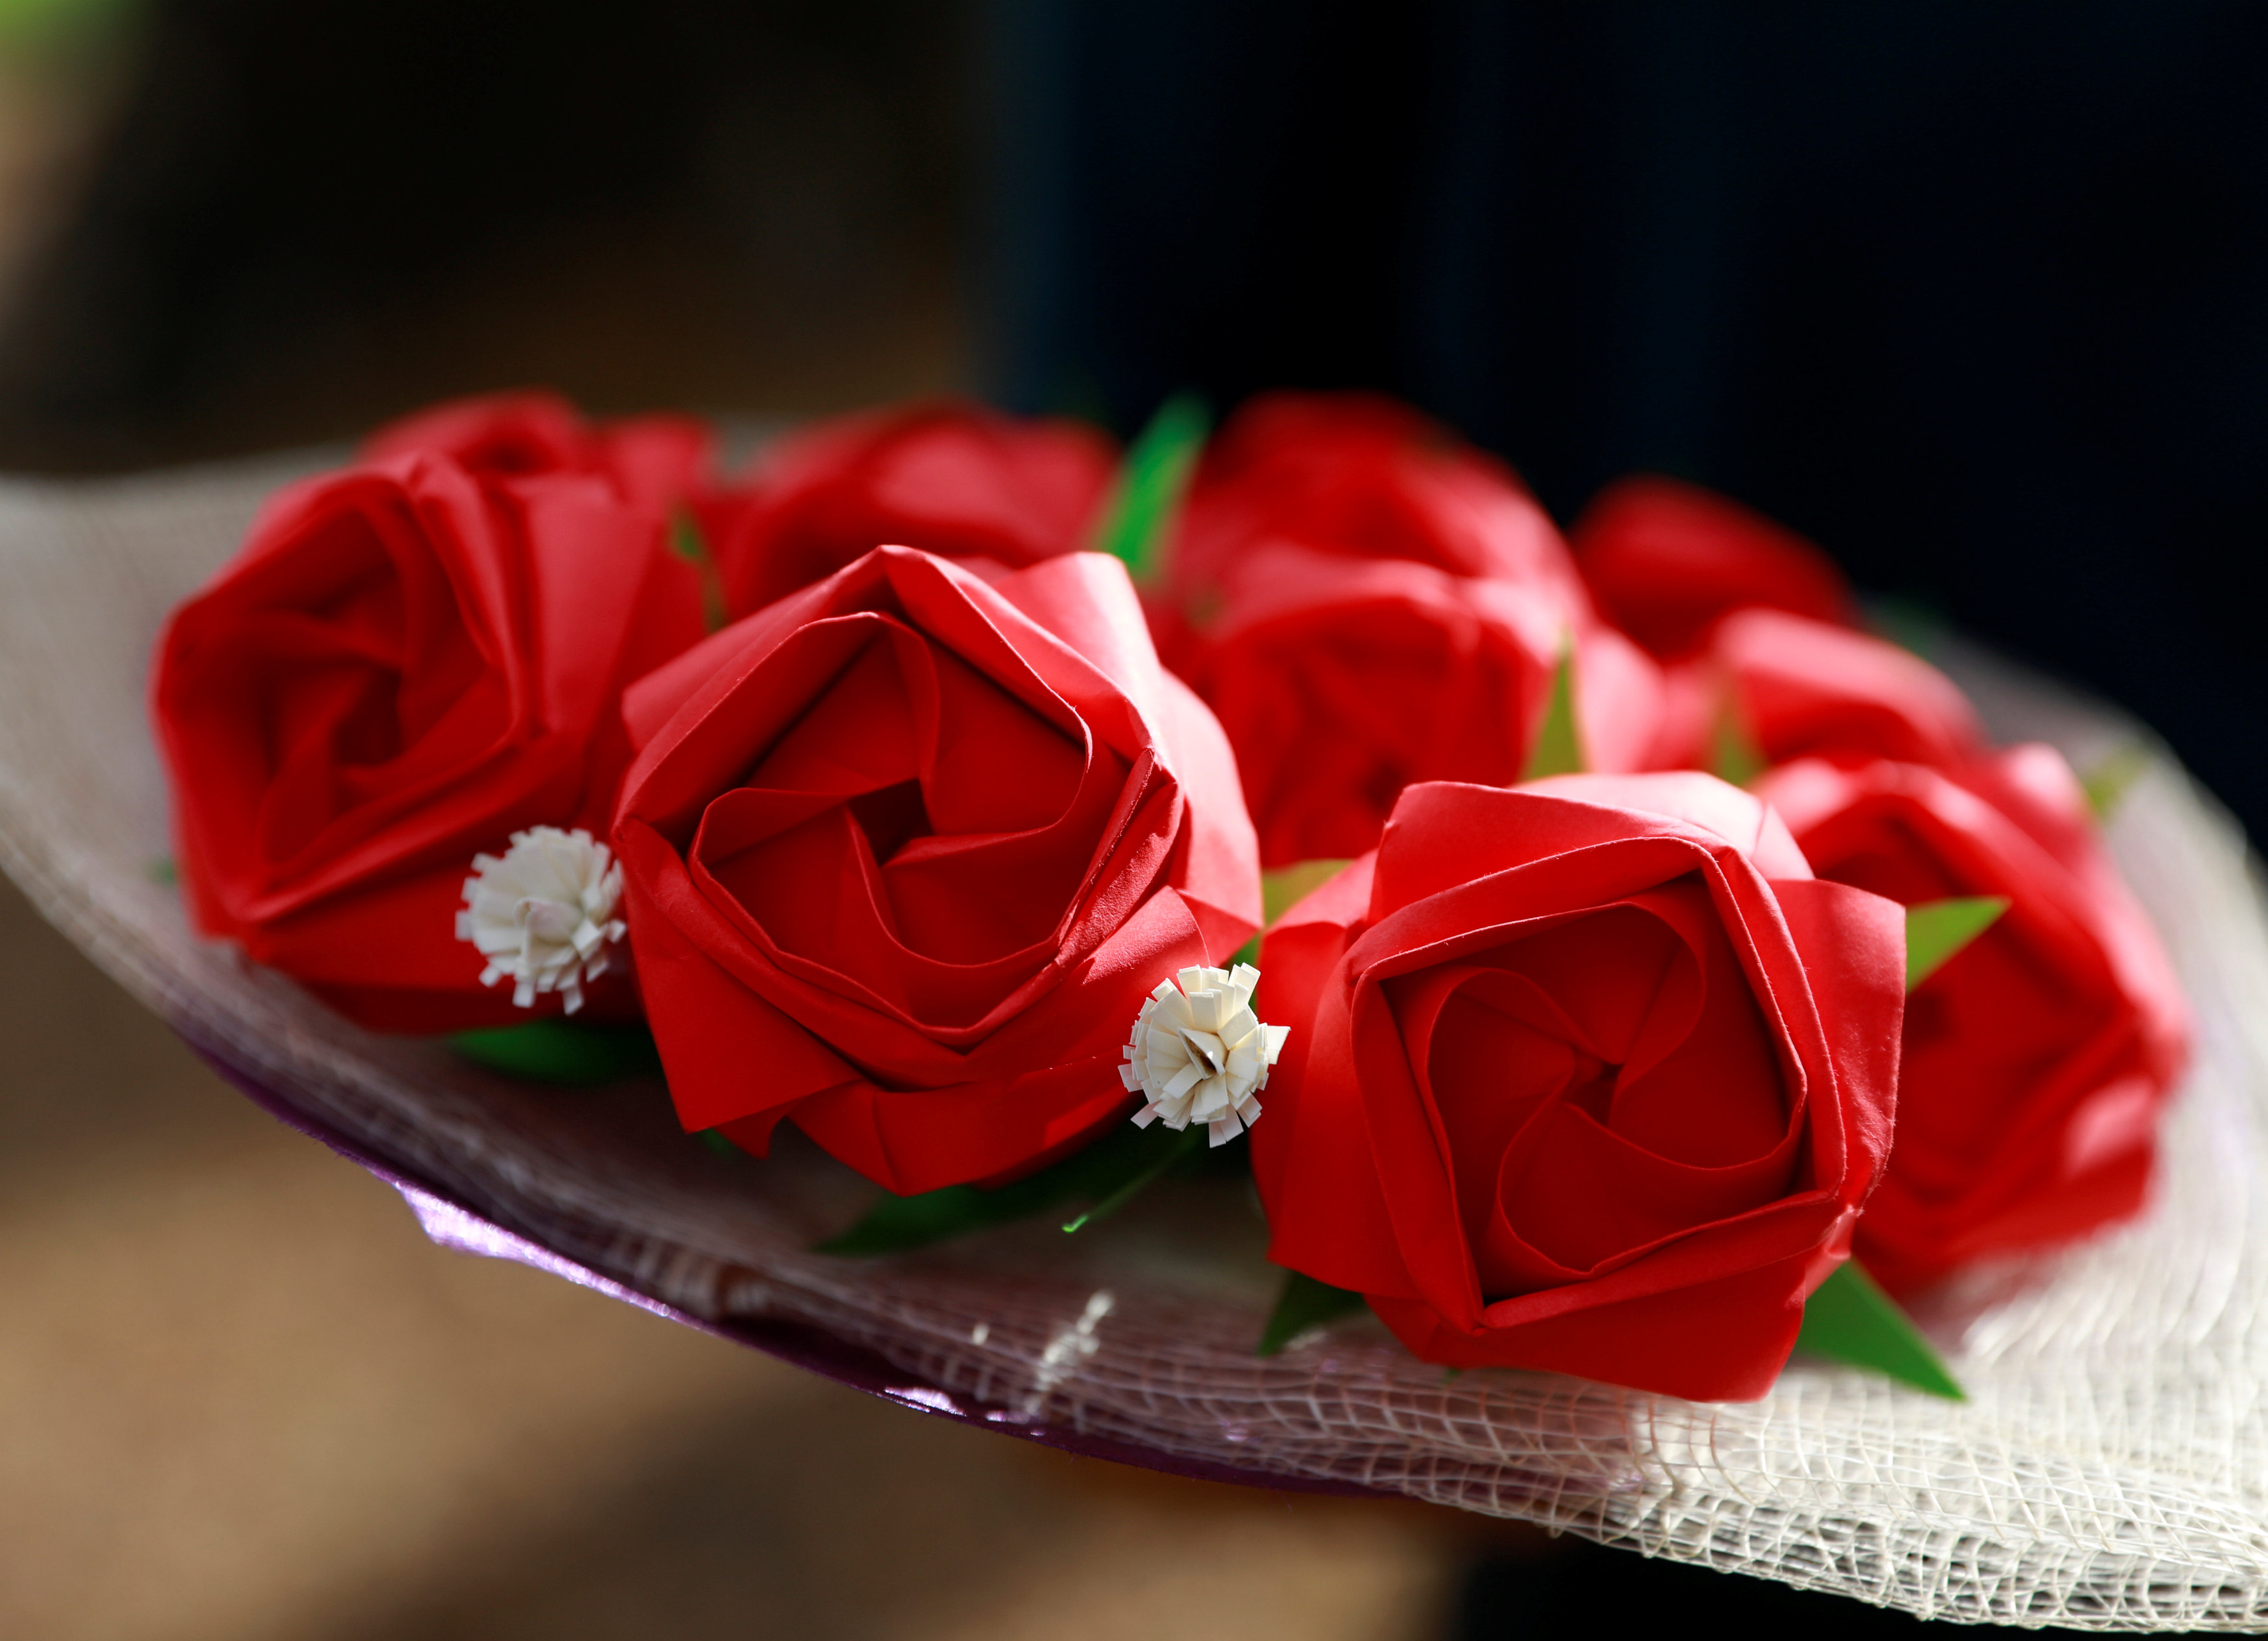 فلبينيون يعبرون عن حبهم الأبدى بباقات زهور ورقية (3)